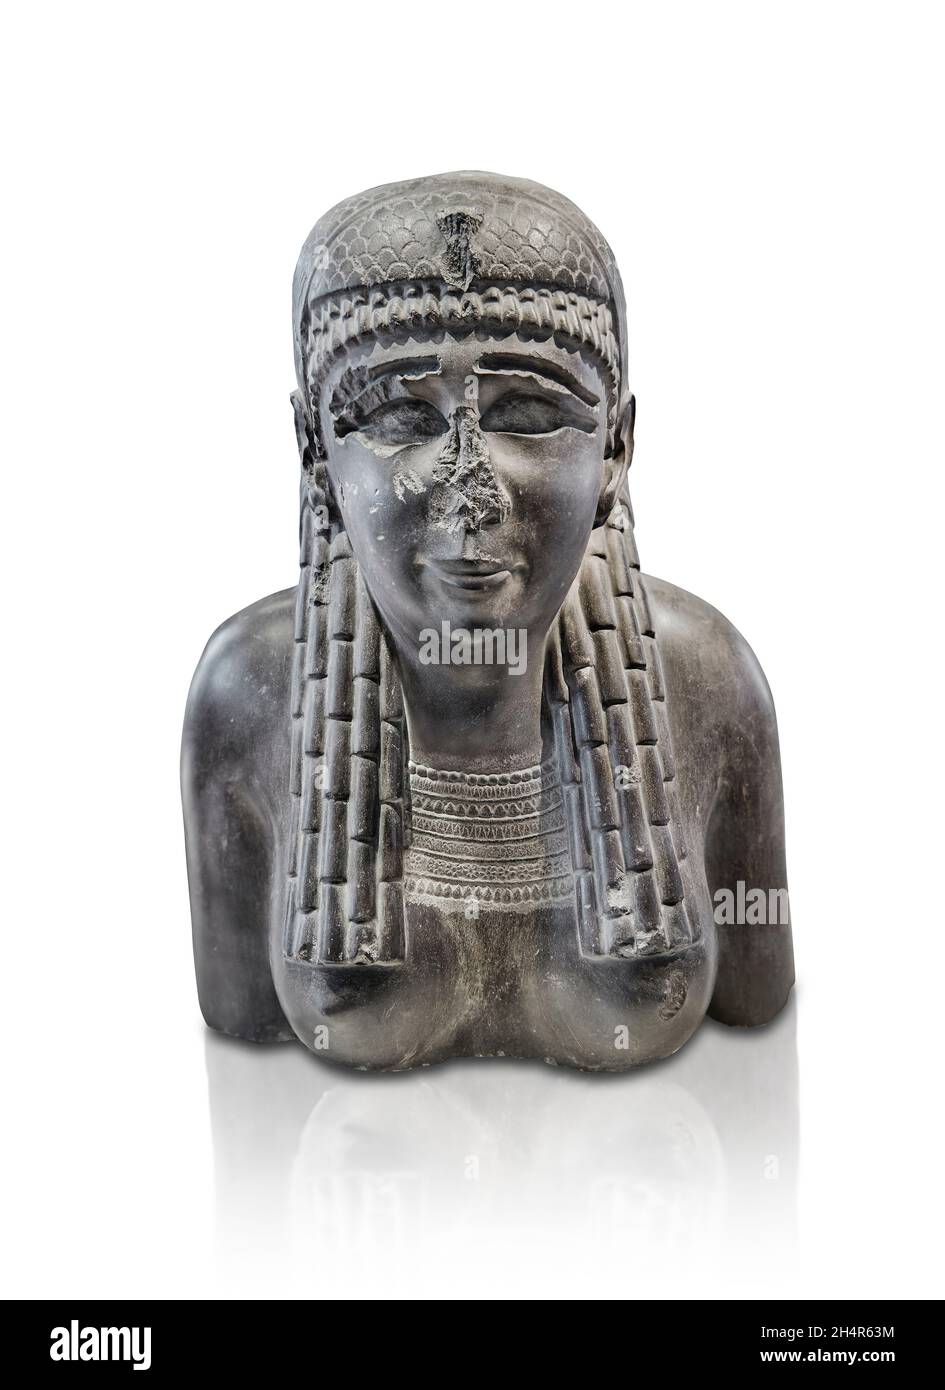 Ägyptische Statue Skulptur einer Königin oder einer Göttin, 299-200 v. Chr., Ptolomaic . Louvre Museum Inv A114.. Die Statue einer Göttin oder Königin hat einen Ousekh nec Stockfoto